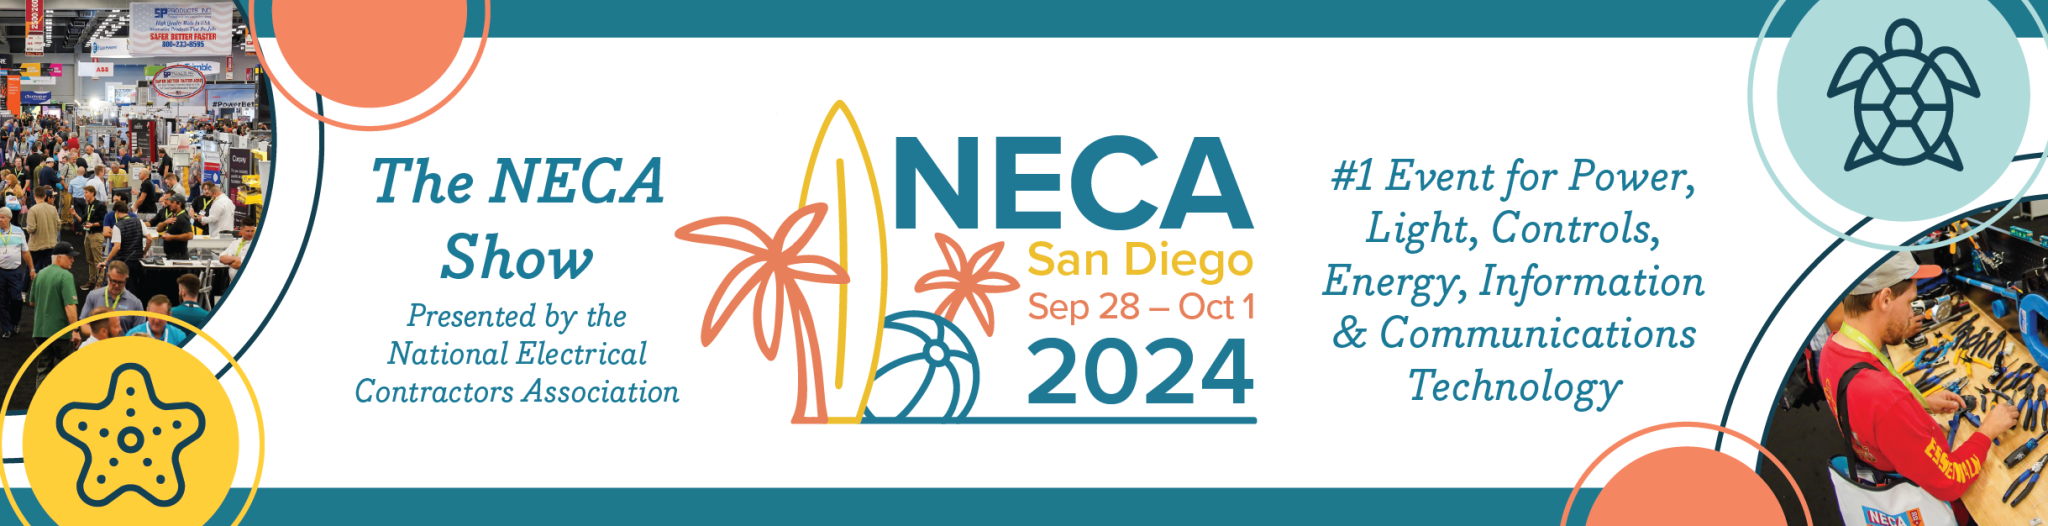 NECA 2024 Convention and Trade Show San Diego, CA